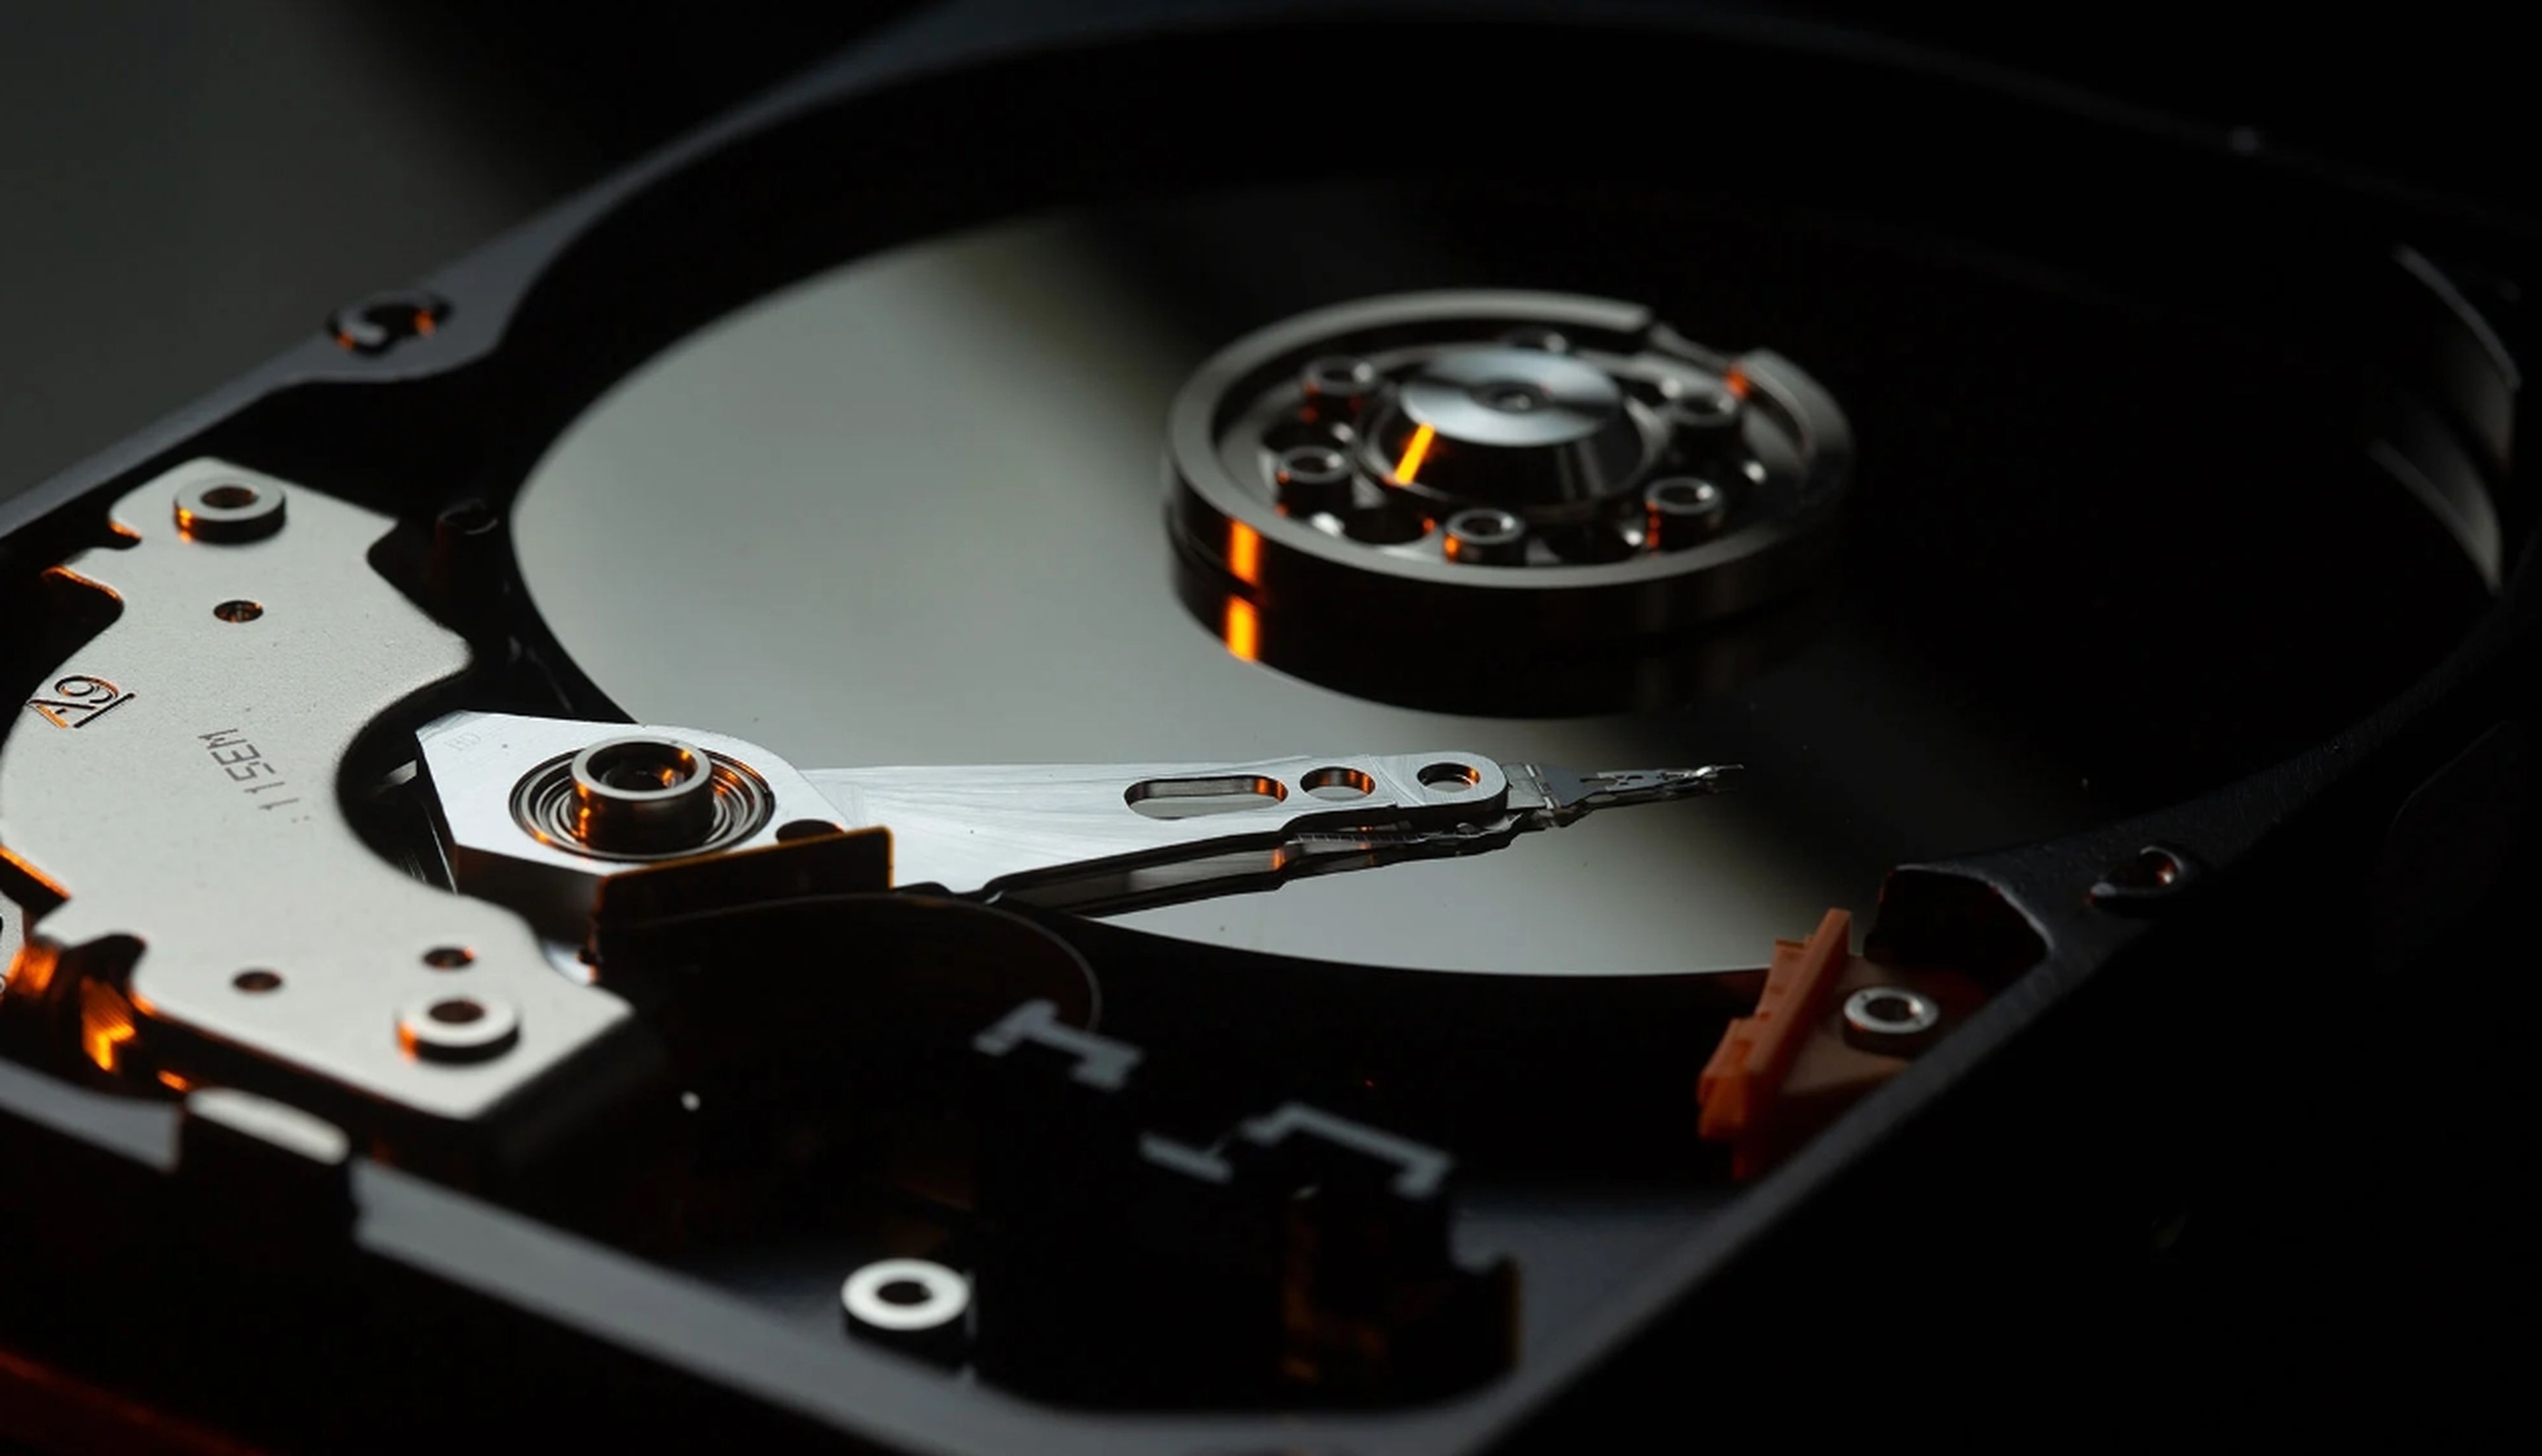 La vida media de una unidad de disco duro HDD no alcanza los 3 aÃ±os segÃºn un nuevo estudio